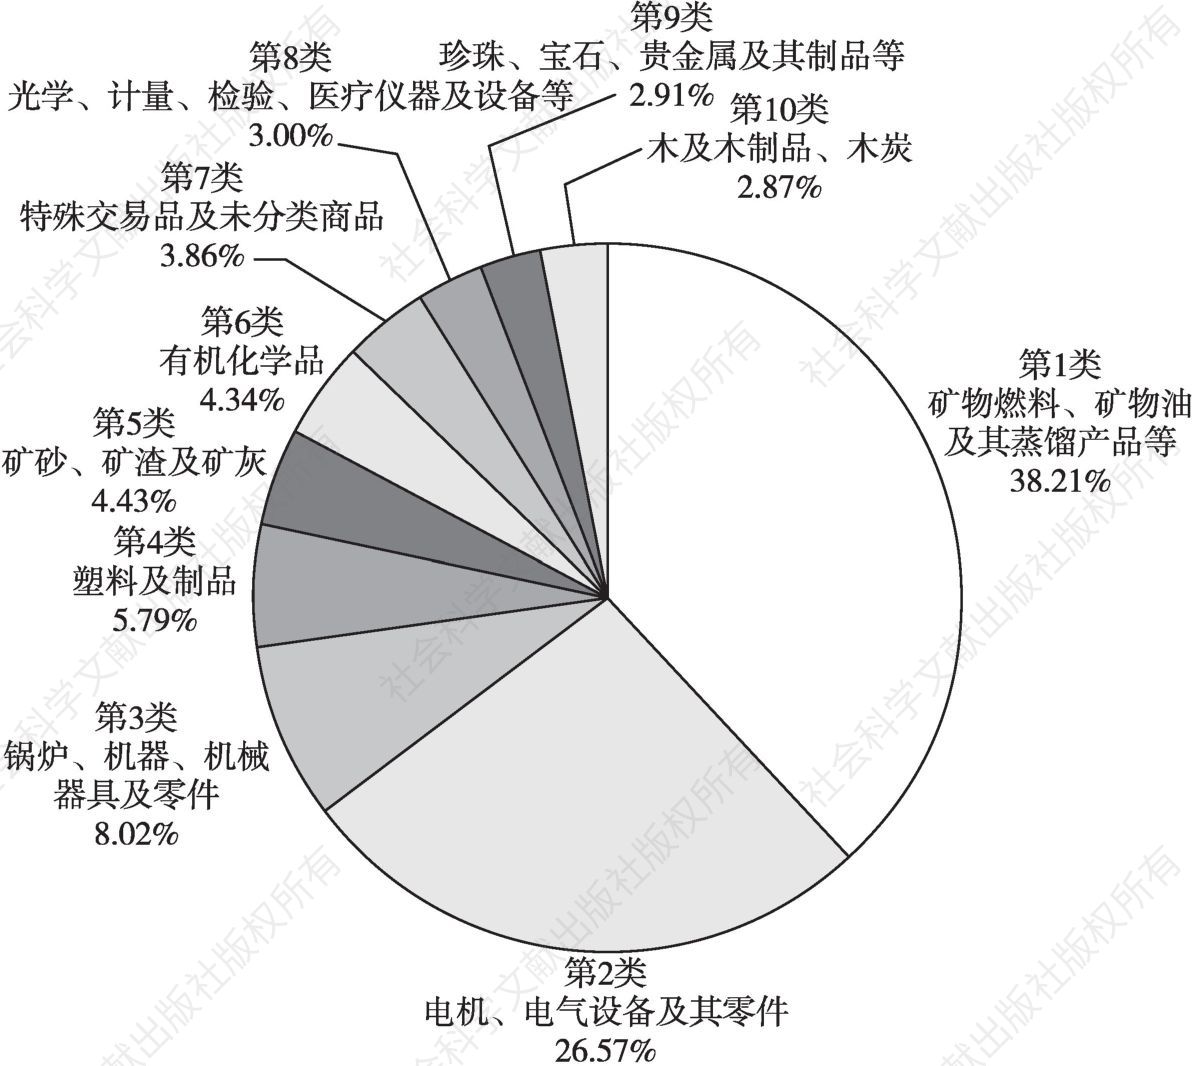 图14 2016年中国从“一带一路”沿线国家进口排名前10的产品占比情况